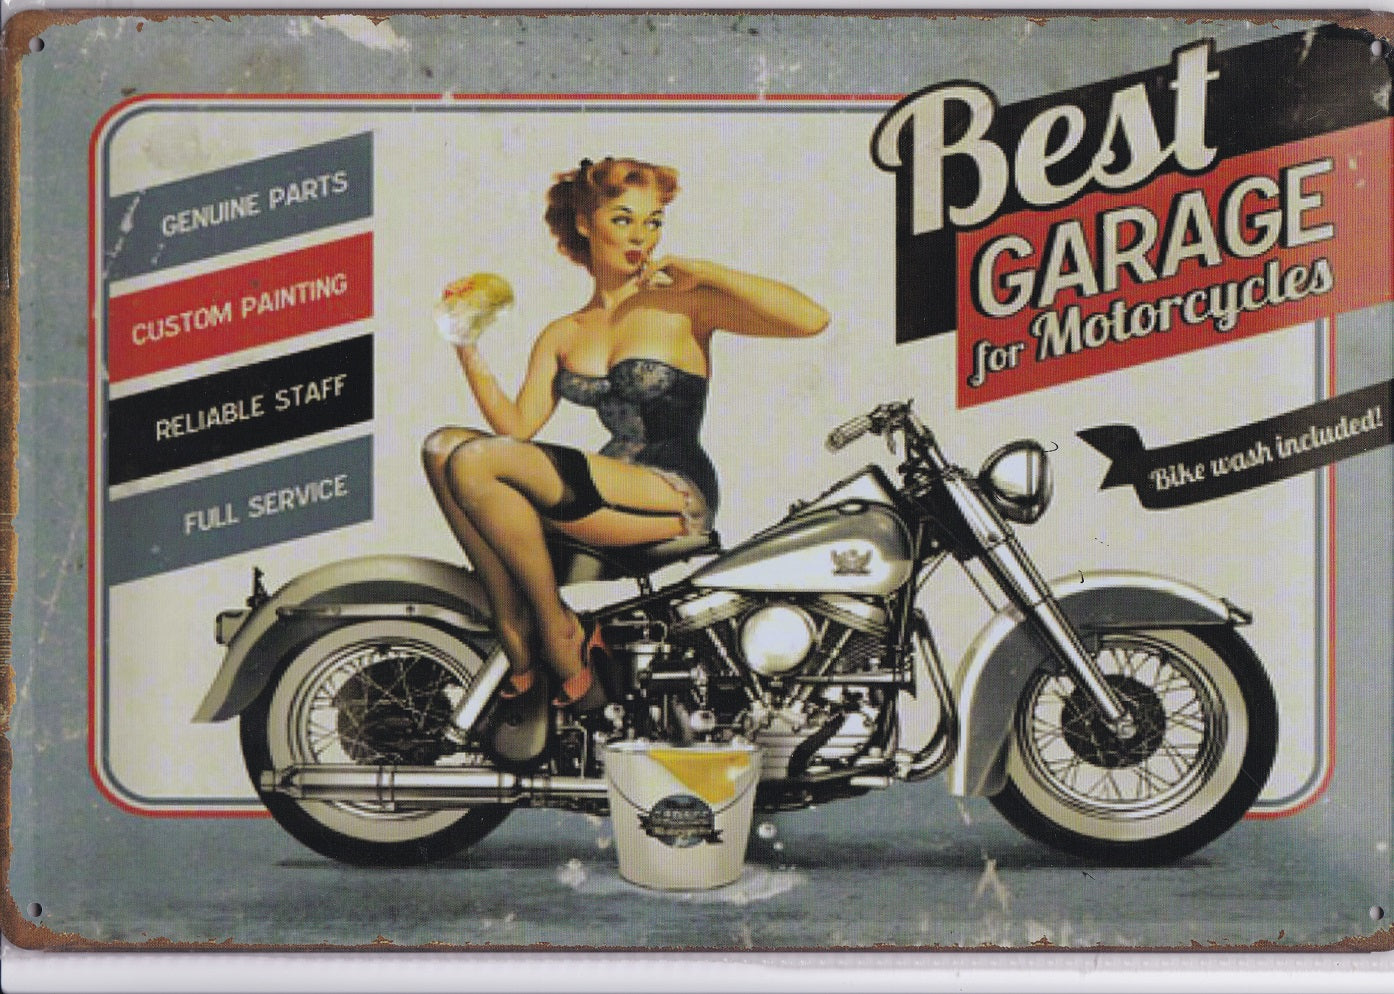 Best Garage For Motorcycles Vintage Metal Sign